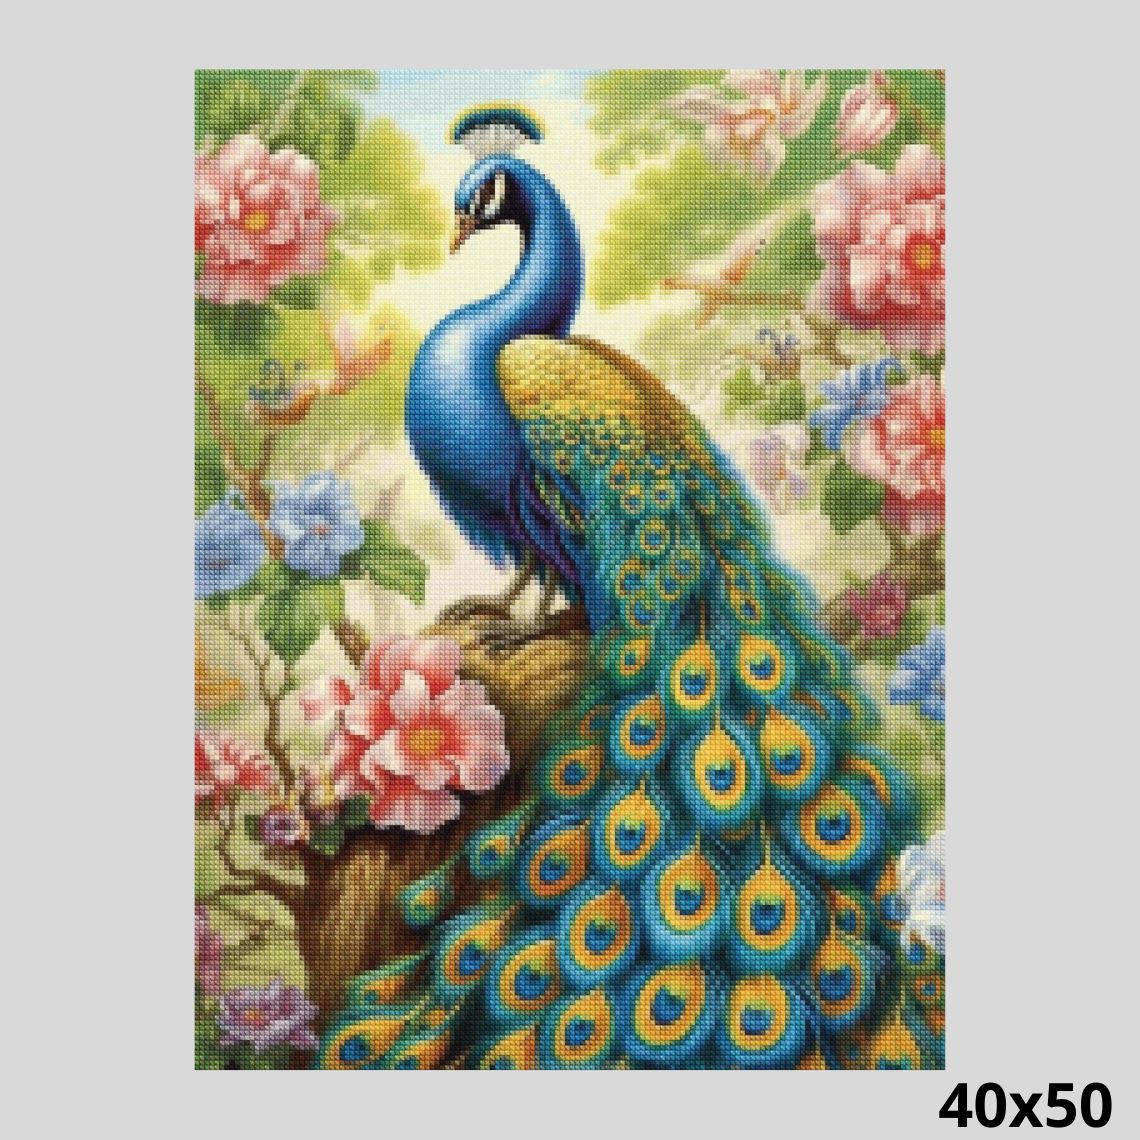 Beautiful Peacock 40x50 Diamond Painting